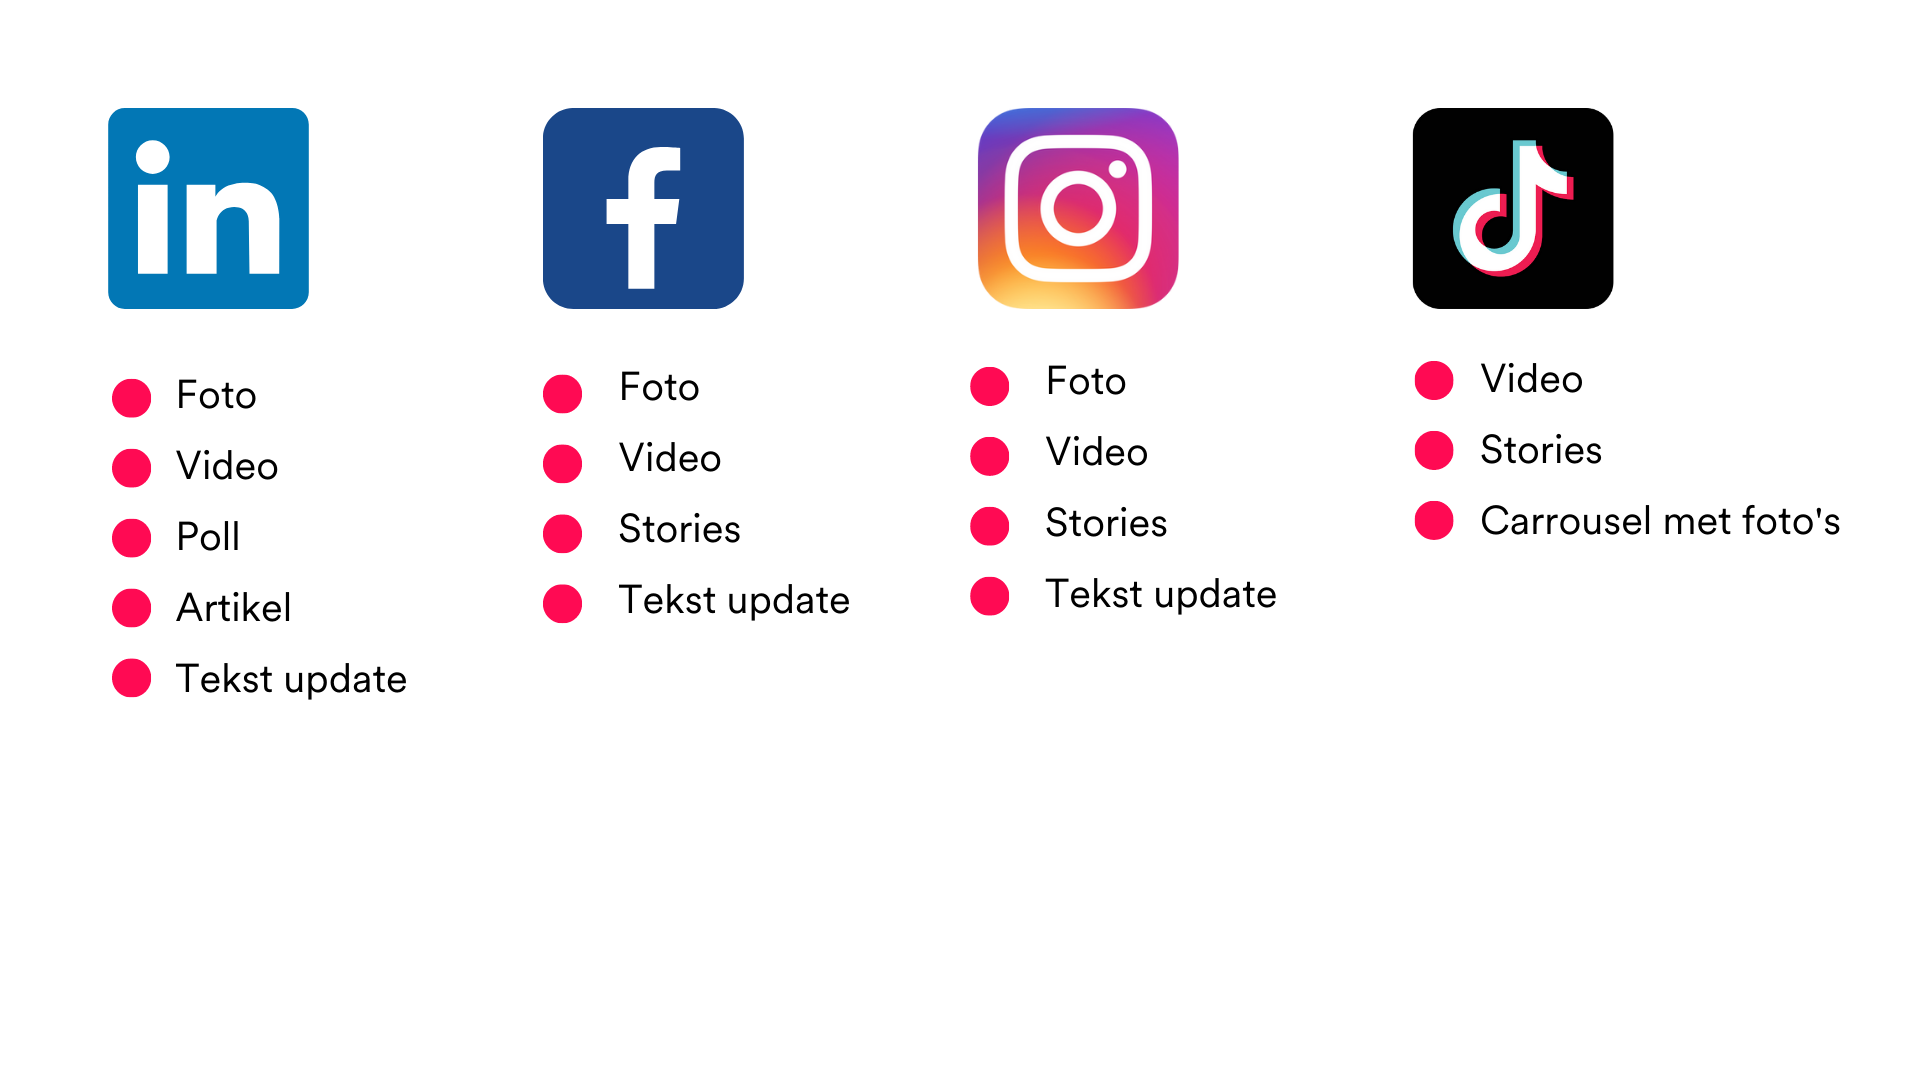 Overzicht van content types per social media platform